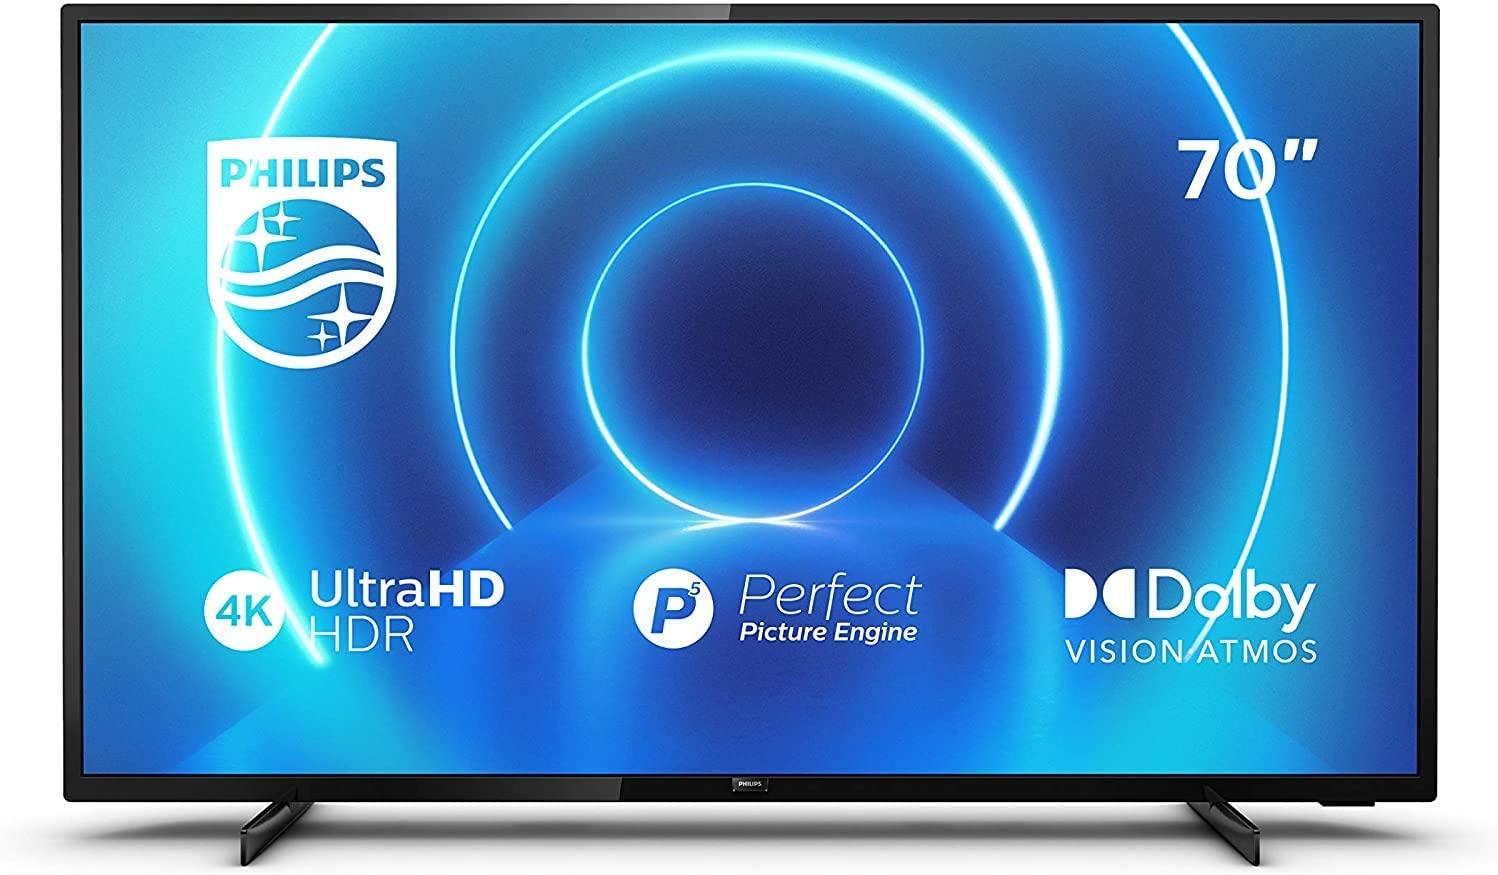 Smart TV Philips con pantalla de 70 pulgadas por solo 689,99 euros